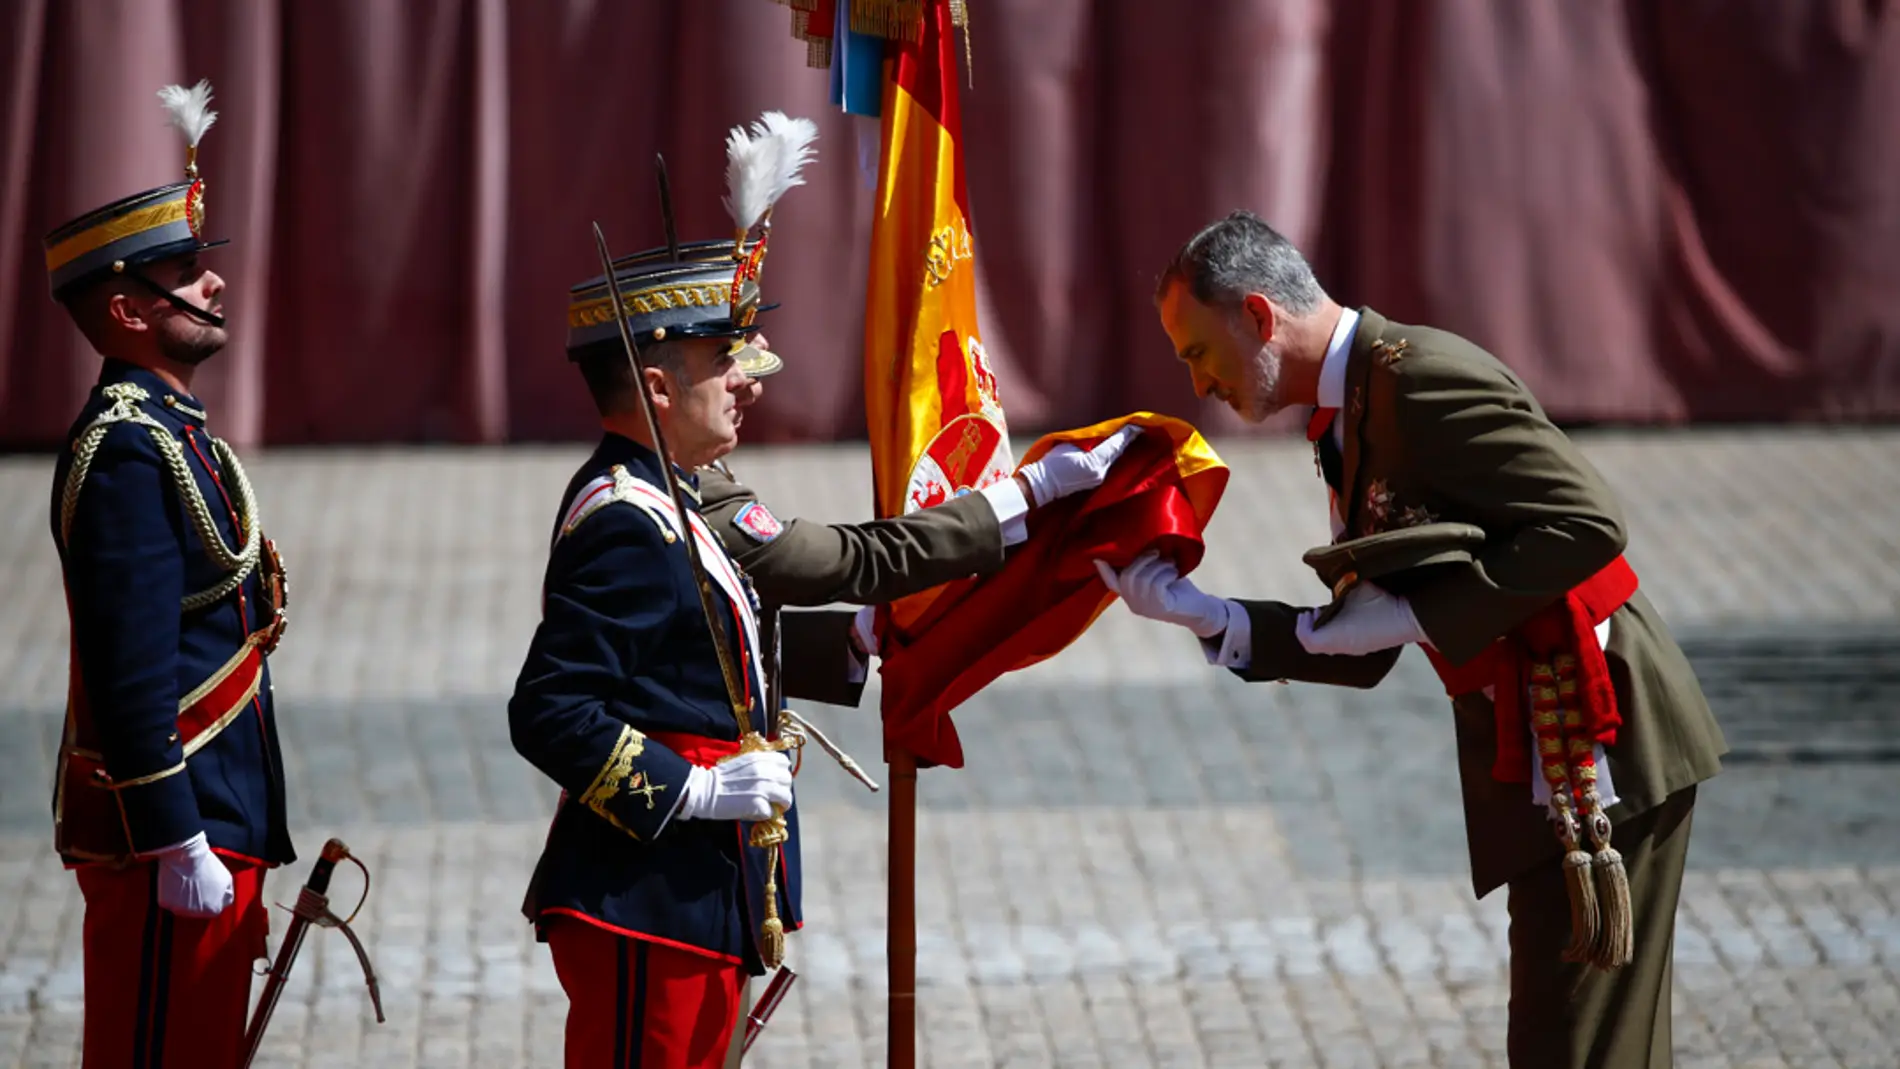 Felipe VI vuelve a jurar la bandera 40 años después con la princesa Leonor como testigo